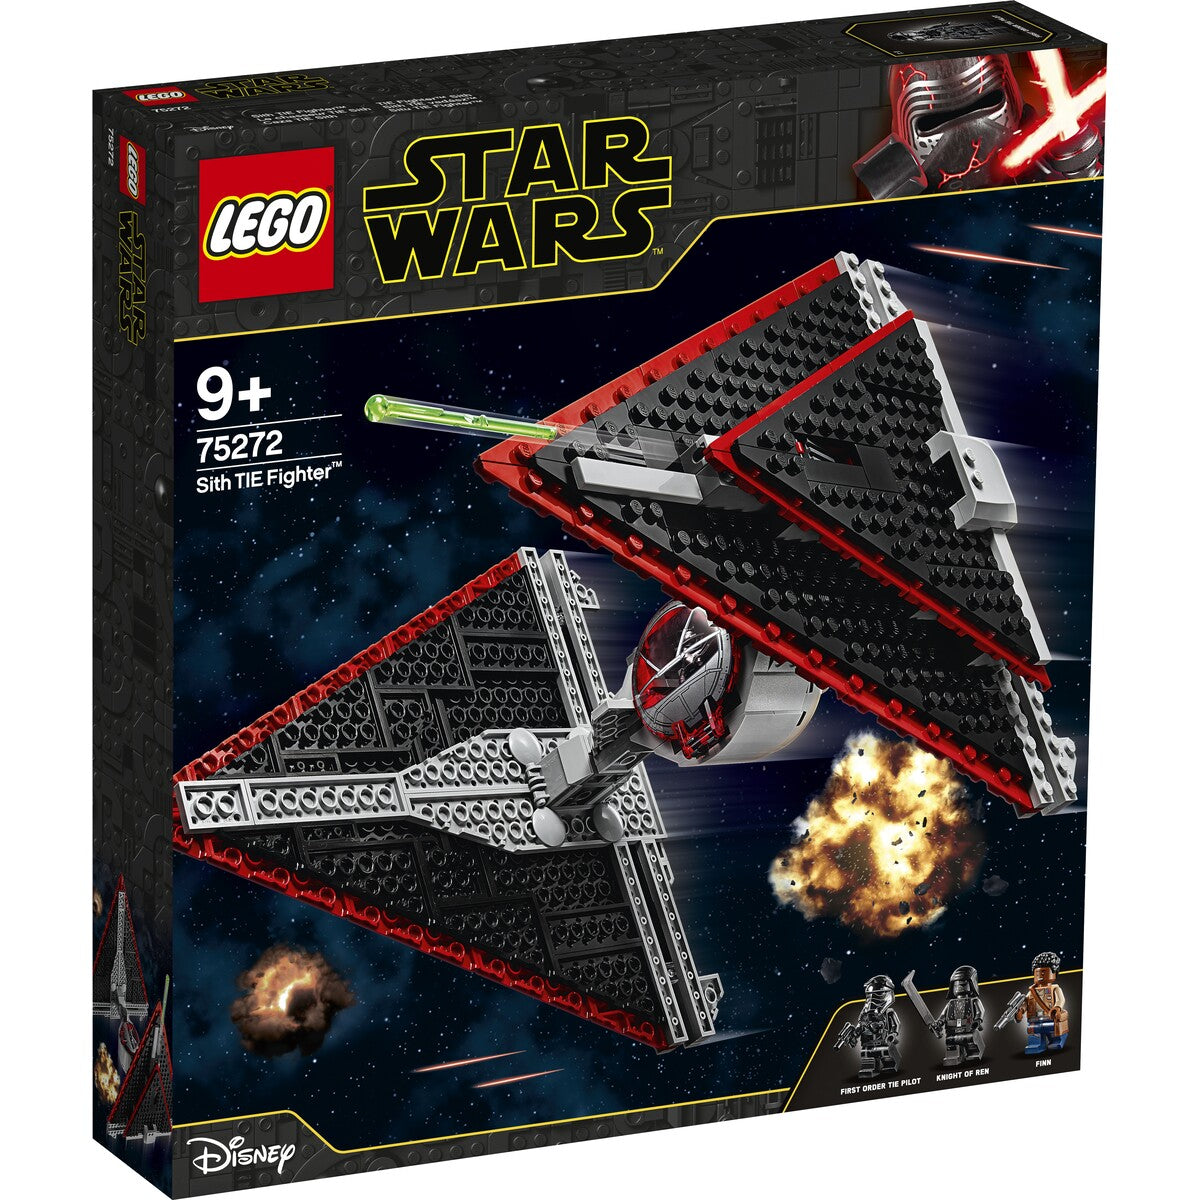 LEGO 75272 STAR WARS SITH TIE FIGHTER